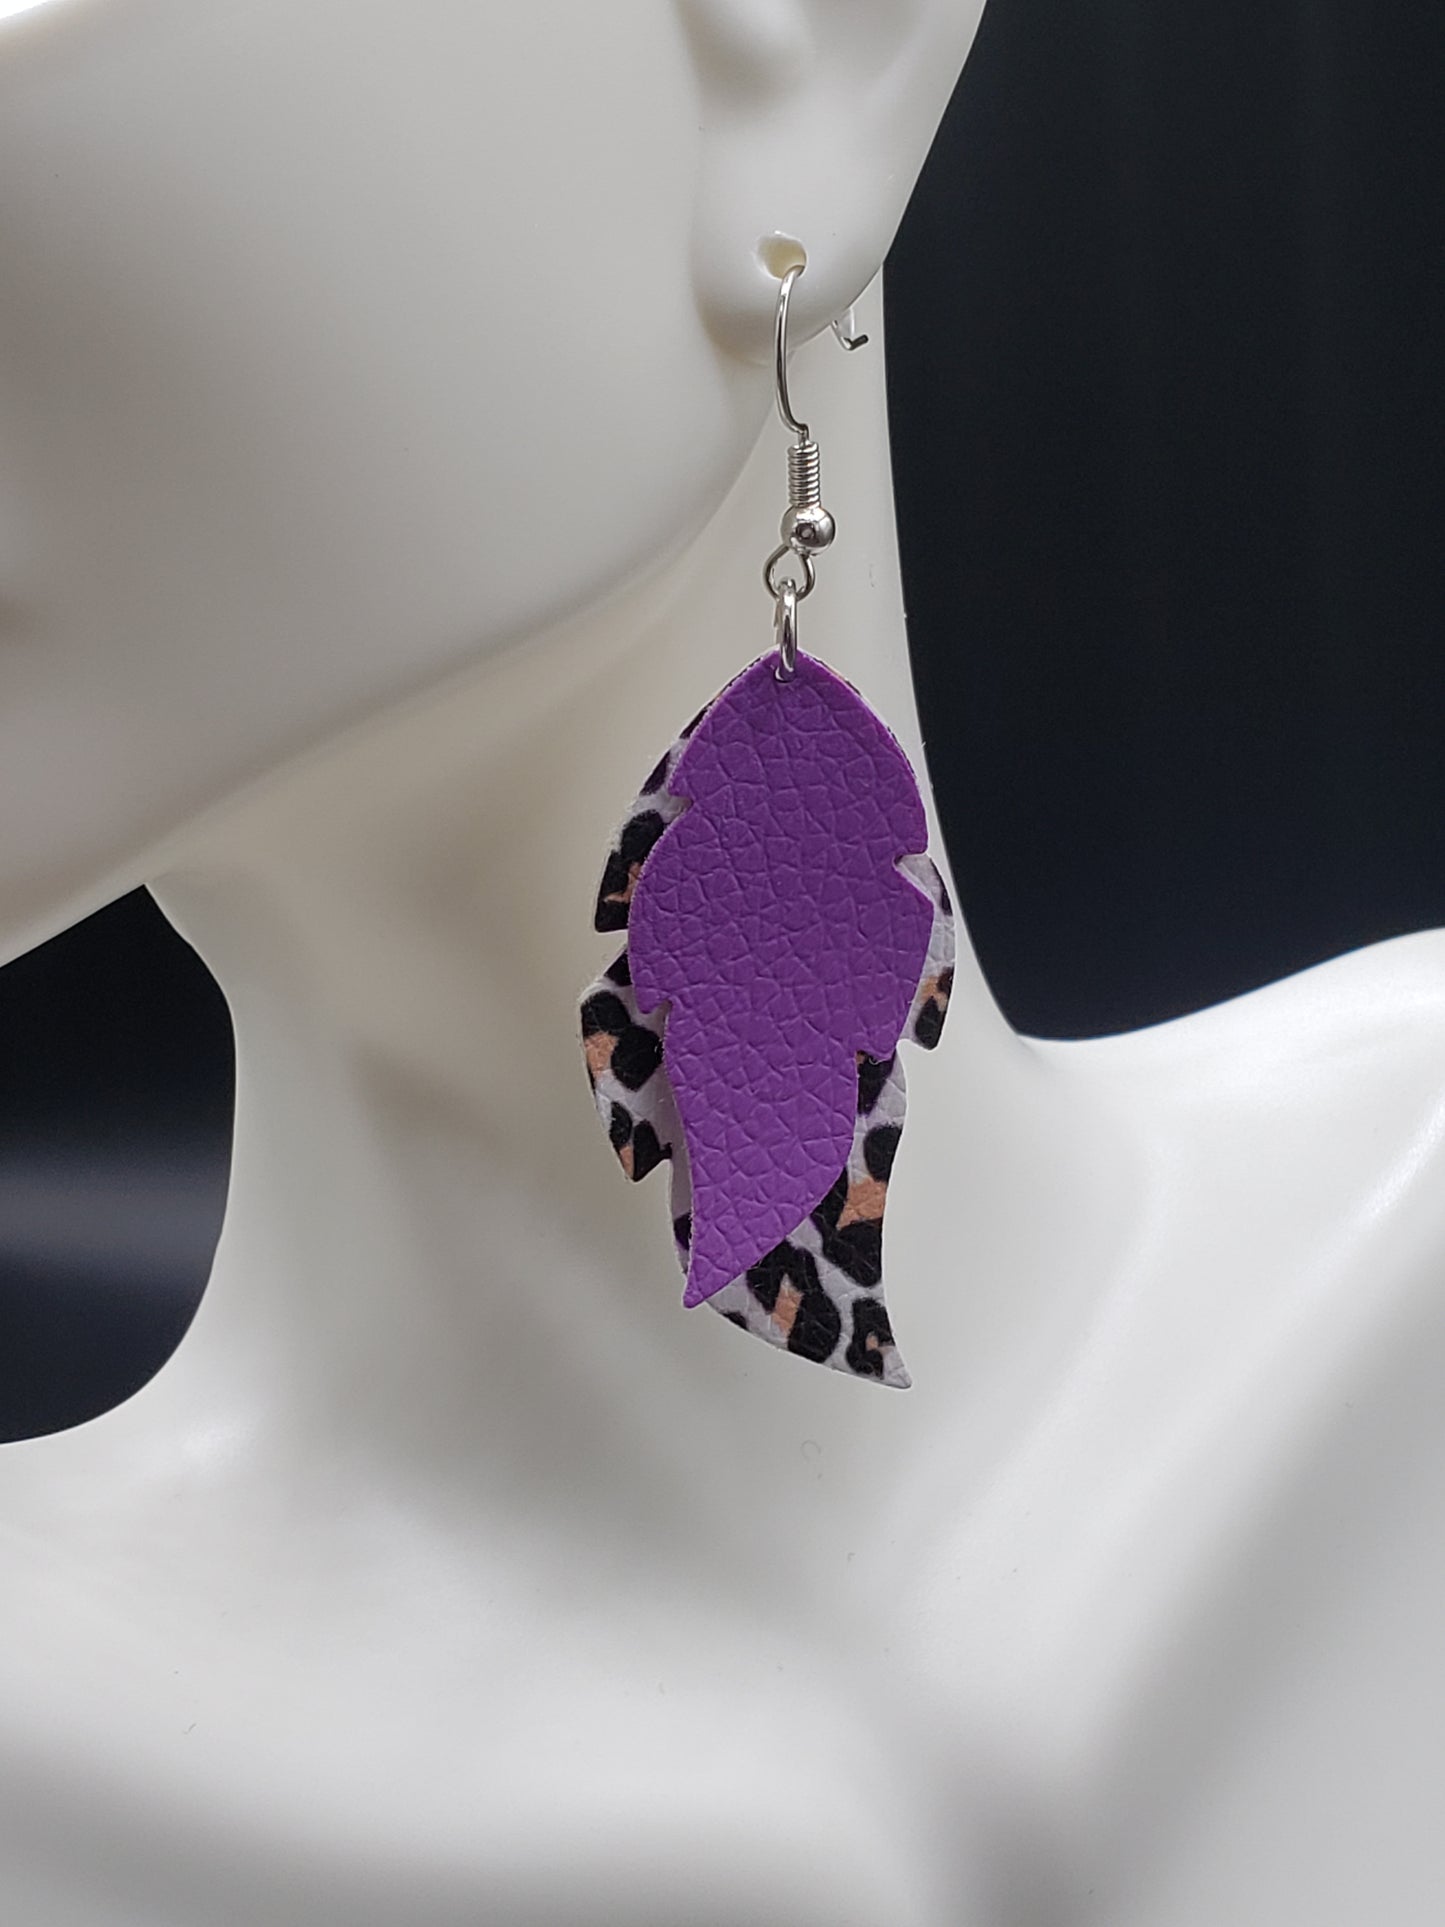 Purple & Leopard Earrings